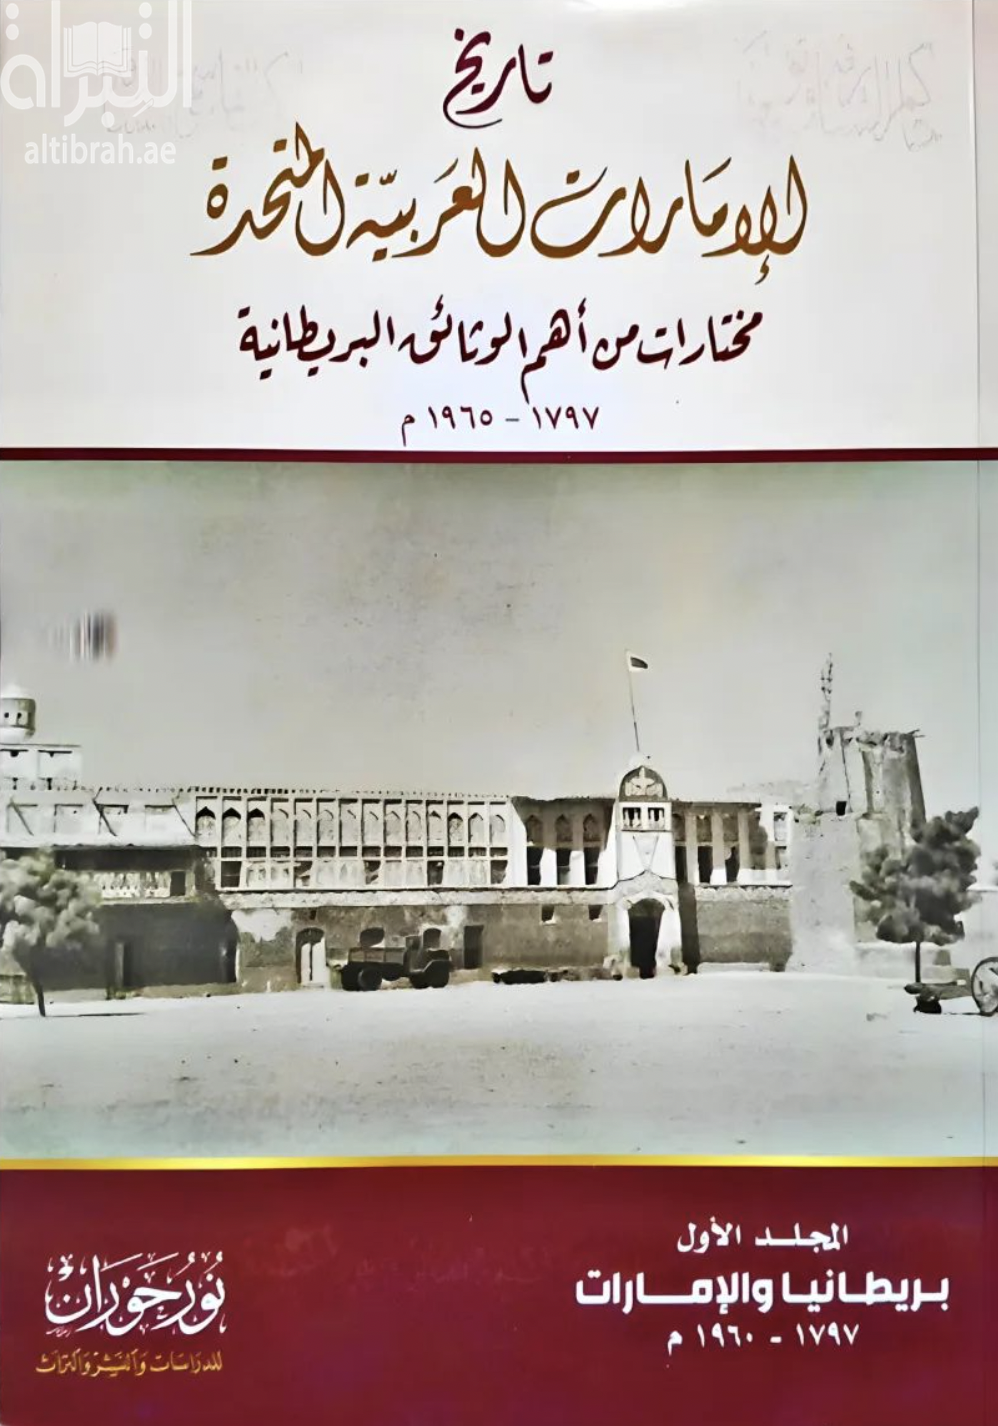 كتاب تاريخ دولة الإمارات العربية المتحدة : من أهم الوثائق البريطانية عن تاريخ دولة الإمارات 1797 إلى 1965